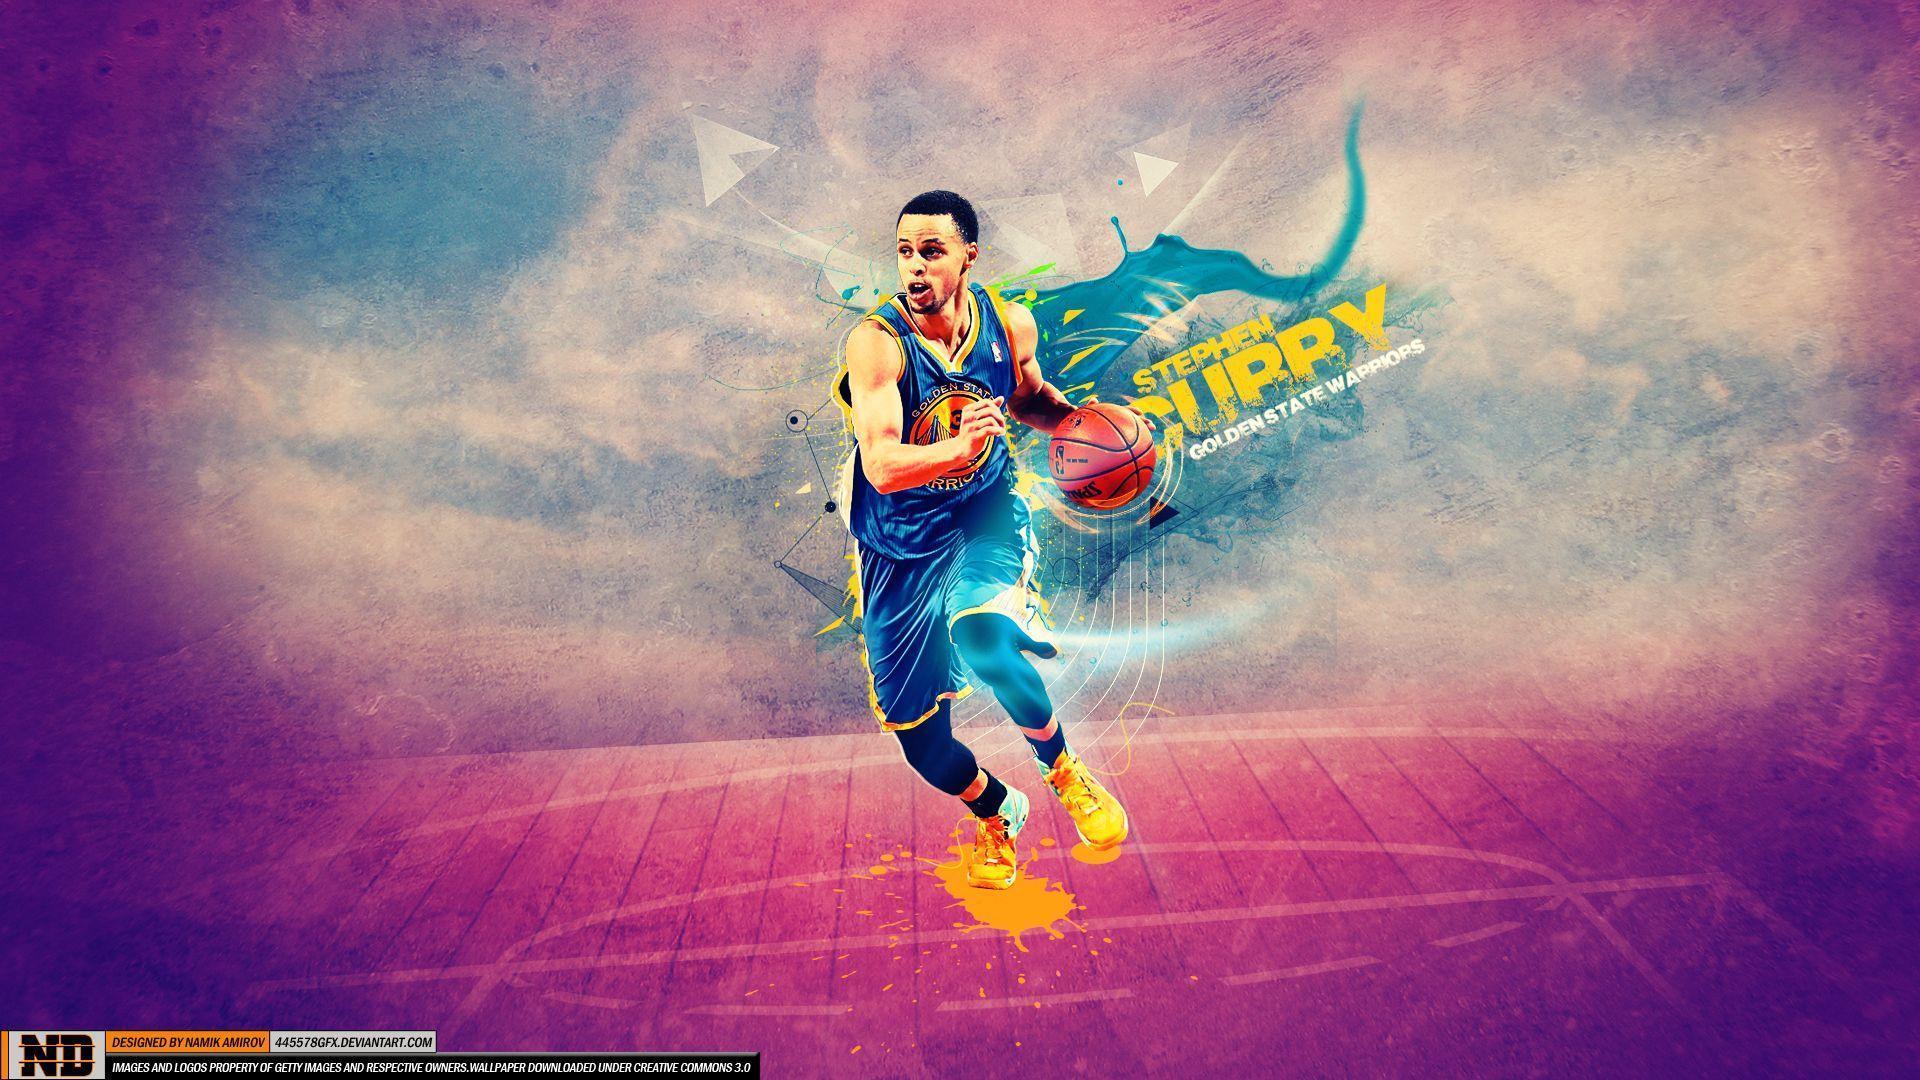 Stephen Curry Wallpaper HD for Basketball Fans | PixelsTalk.Net